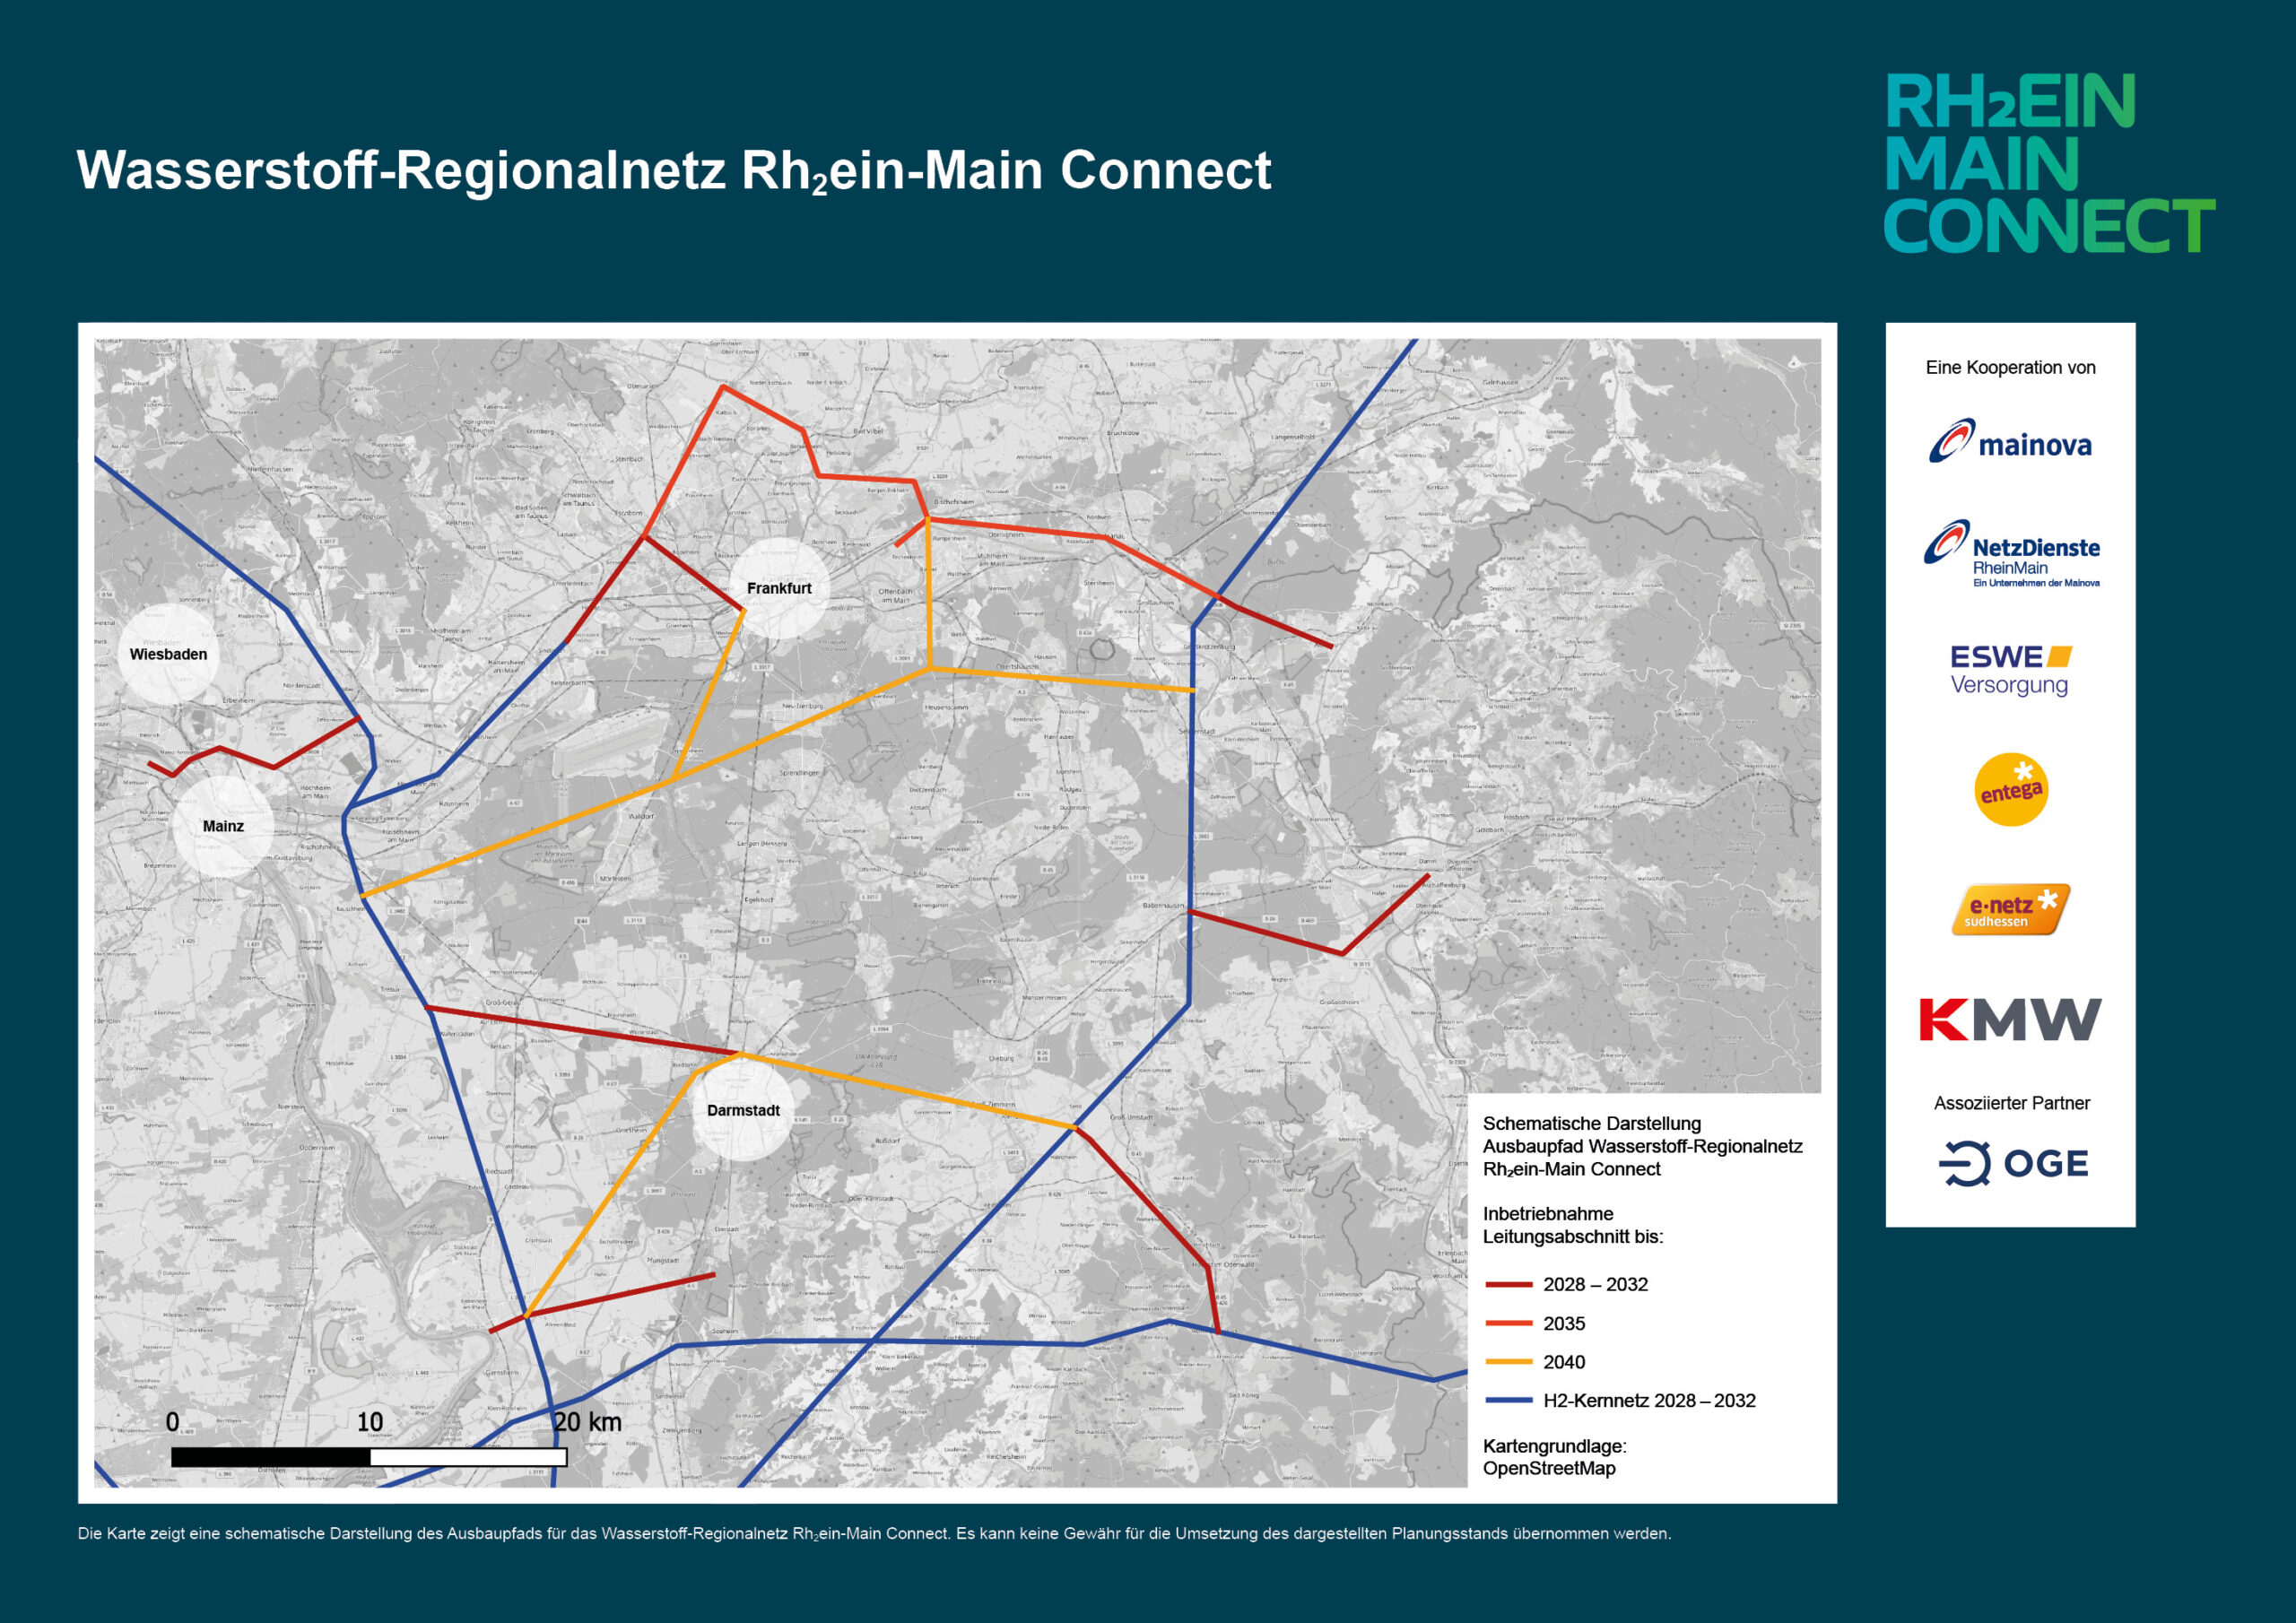 Karte Wasserstoff Regionalnetz Rh2ein Main Connect